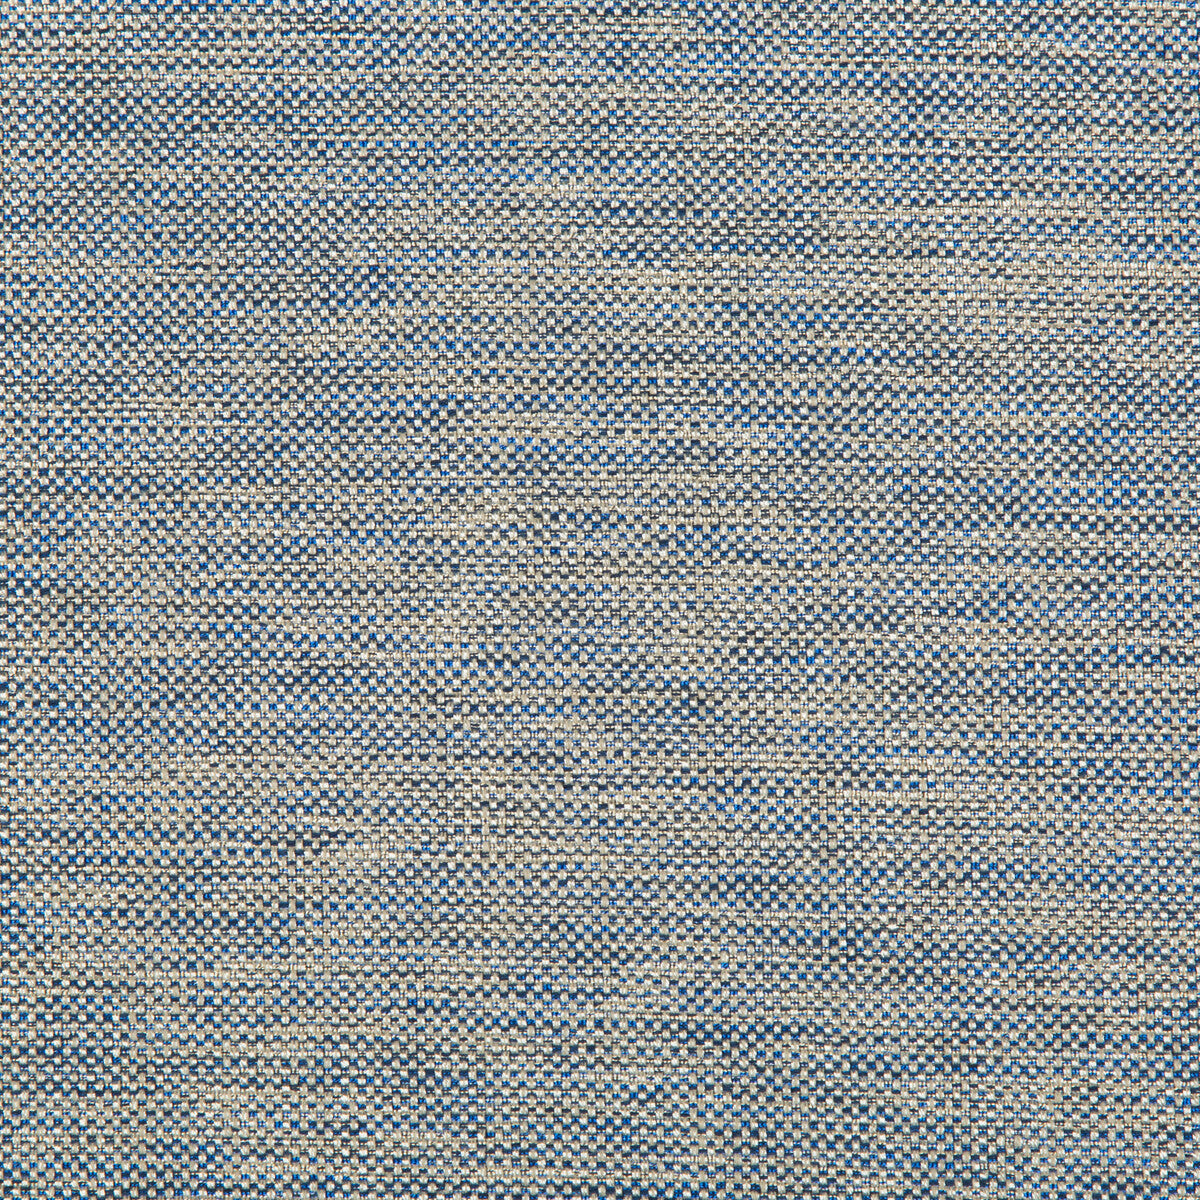 Kravet Basics fabric in 33242-5 color - pattern 33242.5.0 - by Kravet Basics in the Kravet Colors collection